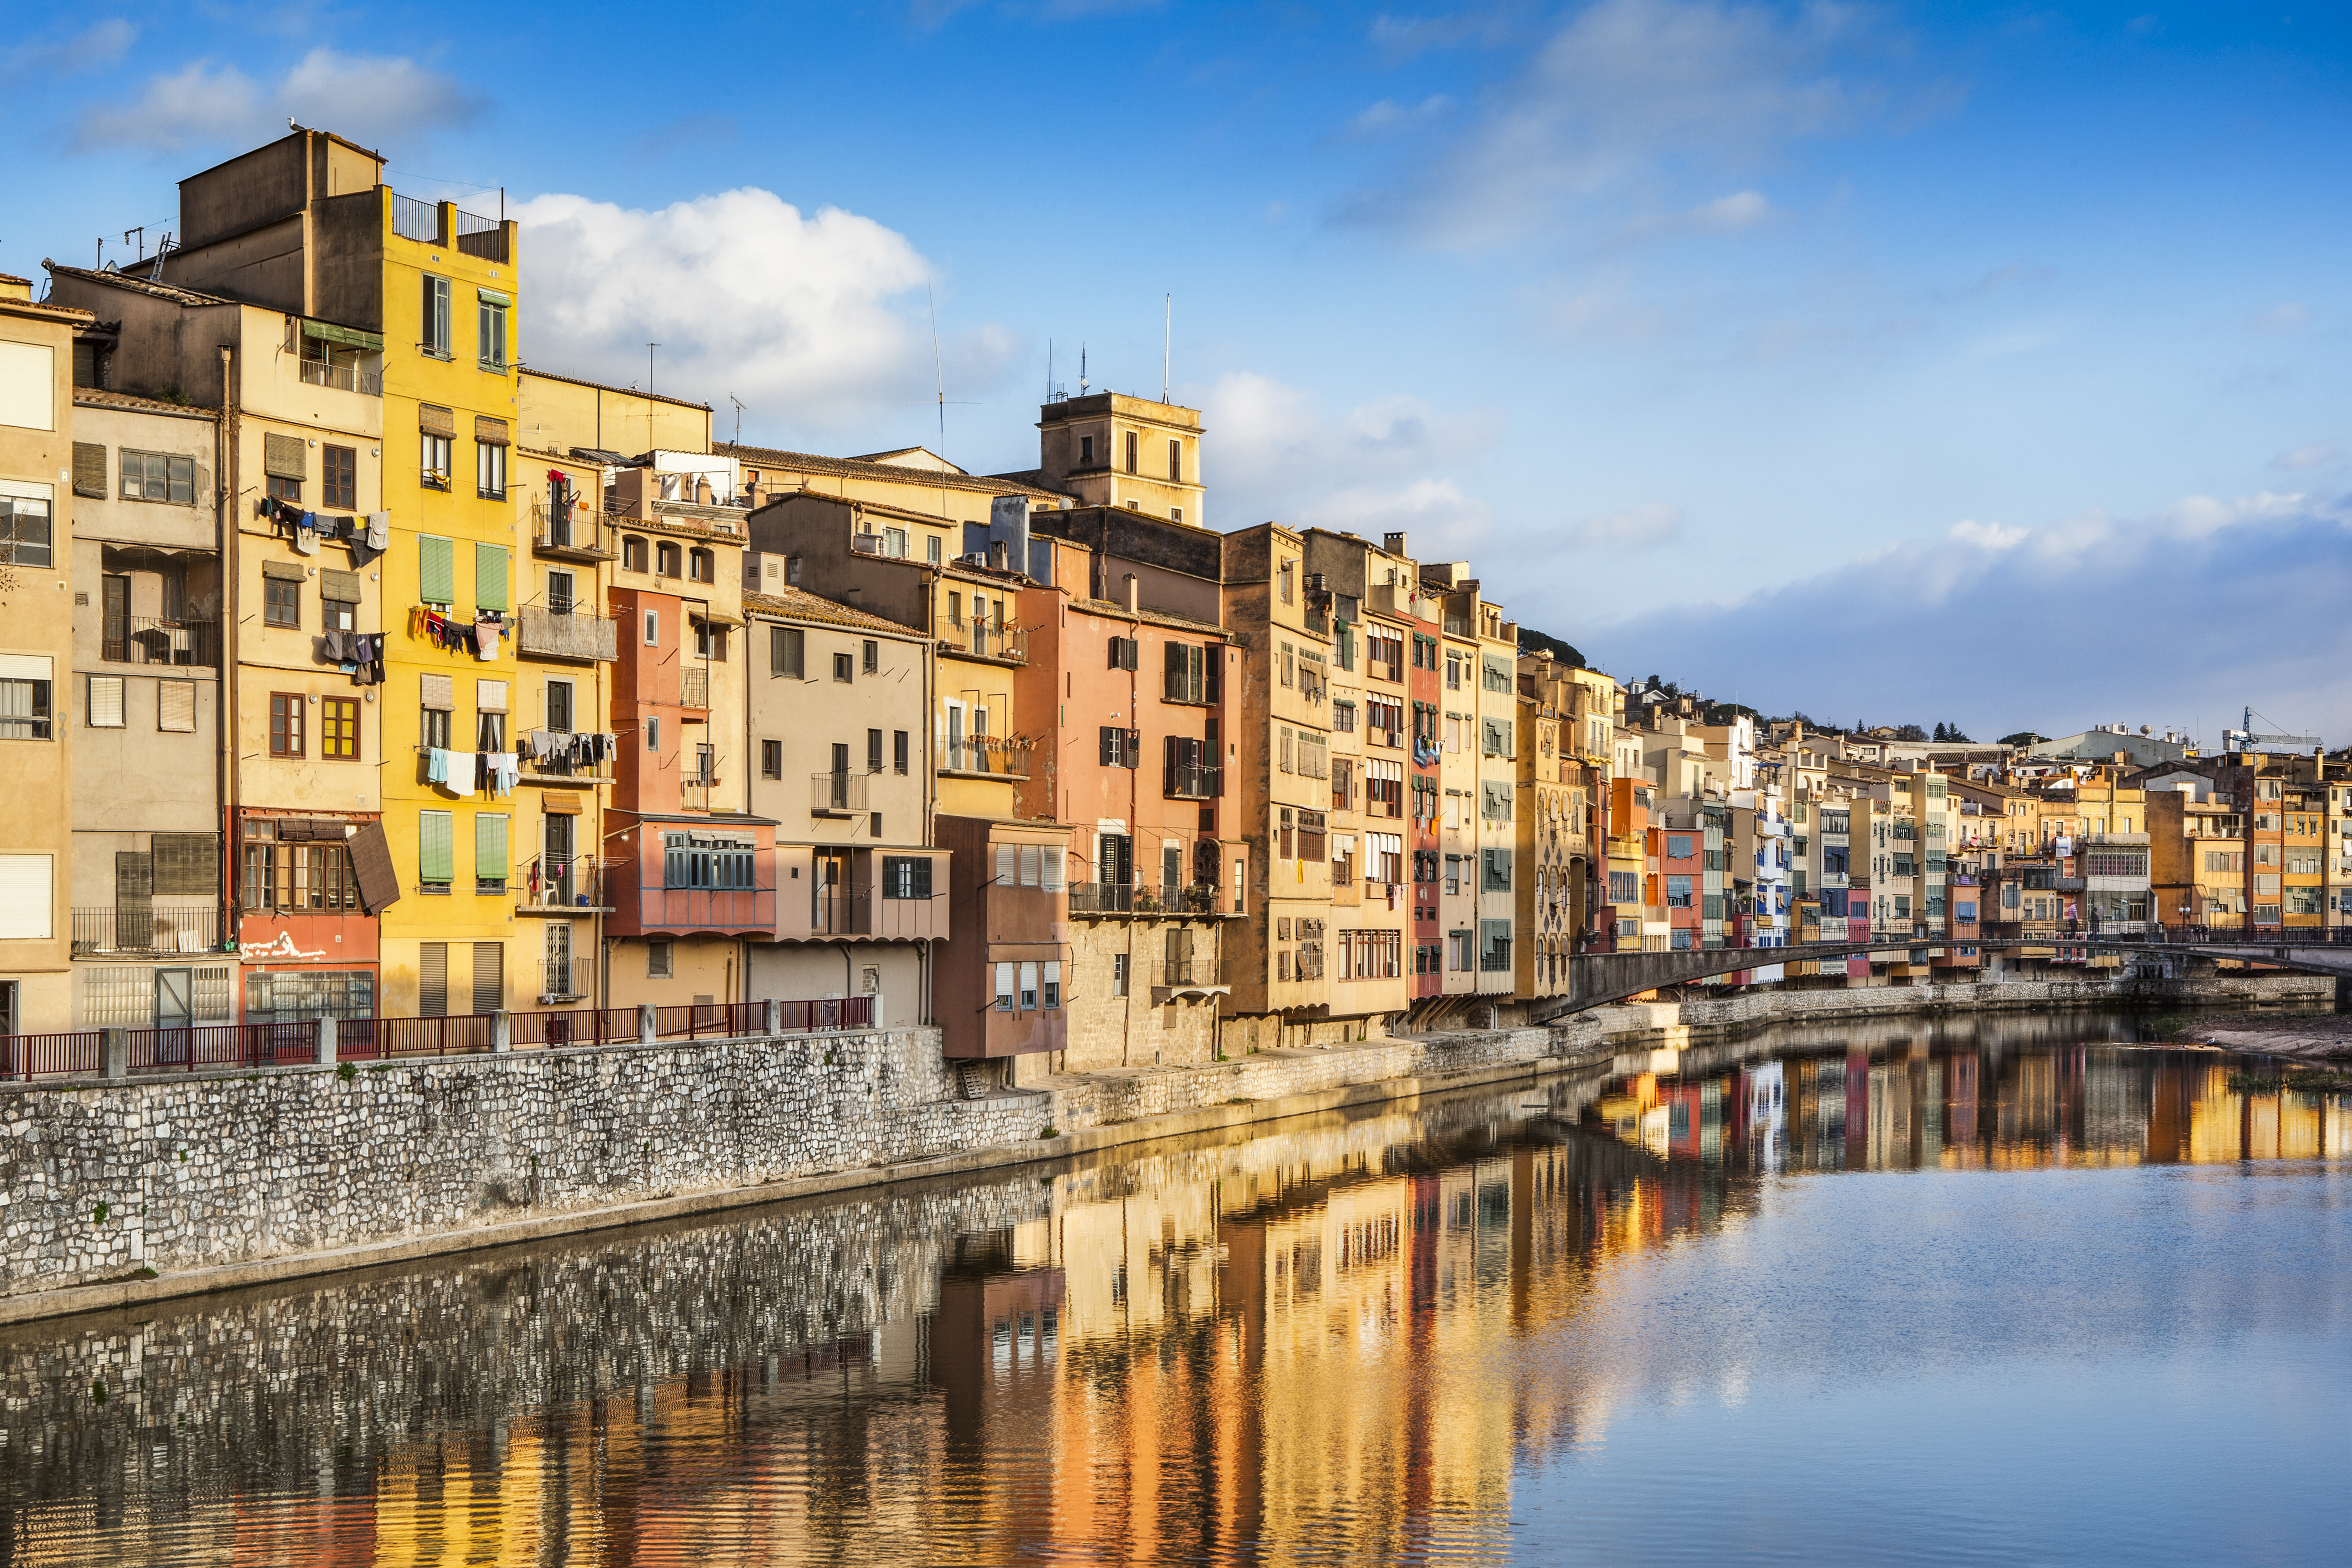 Turismo cultural y creativo en Girona